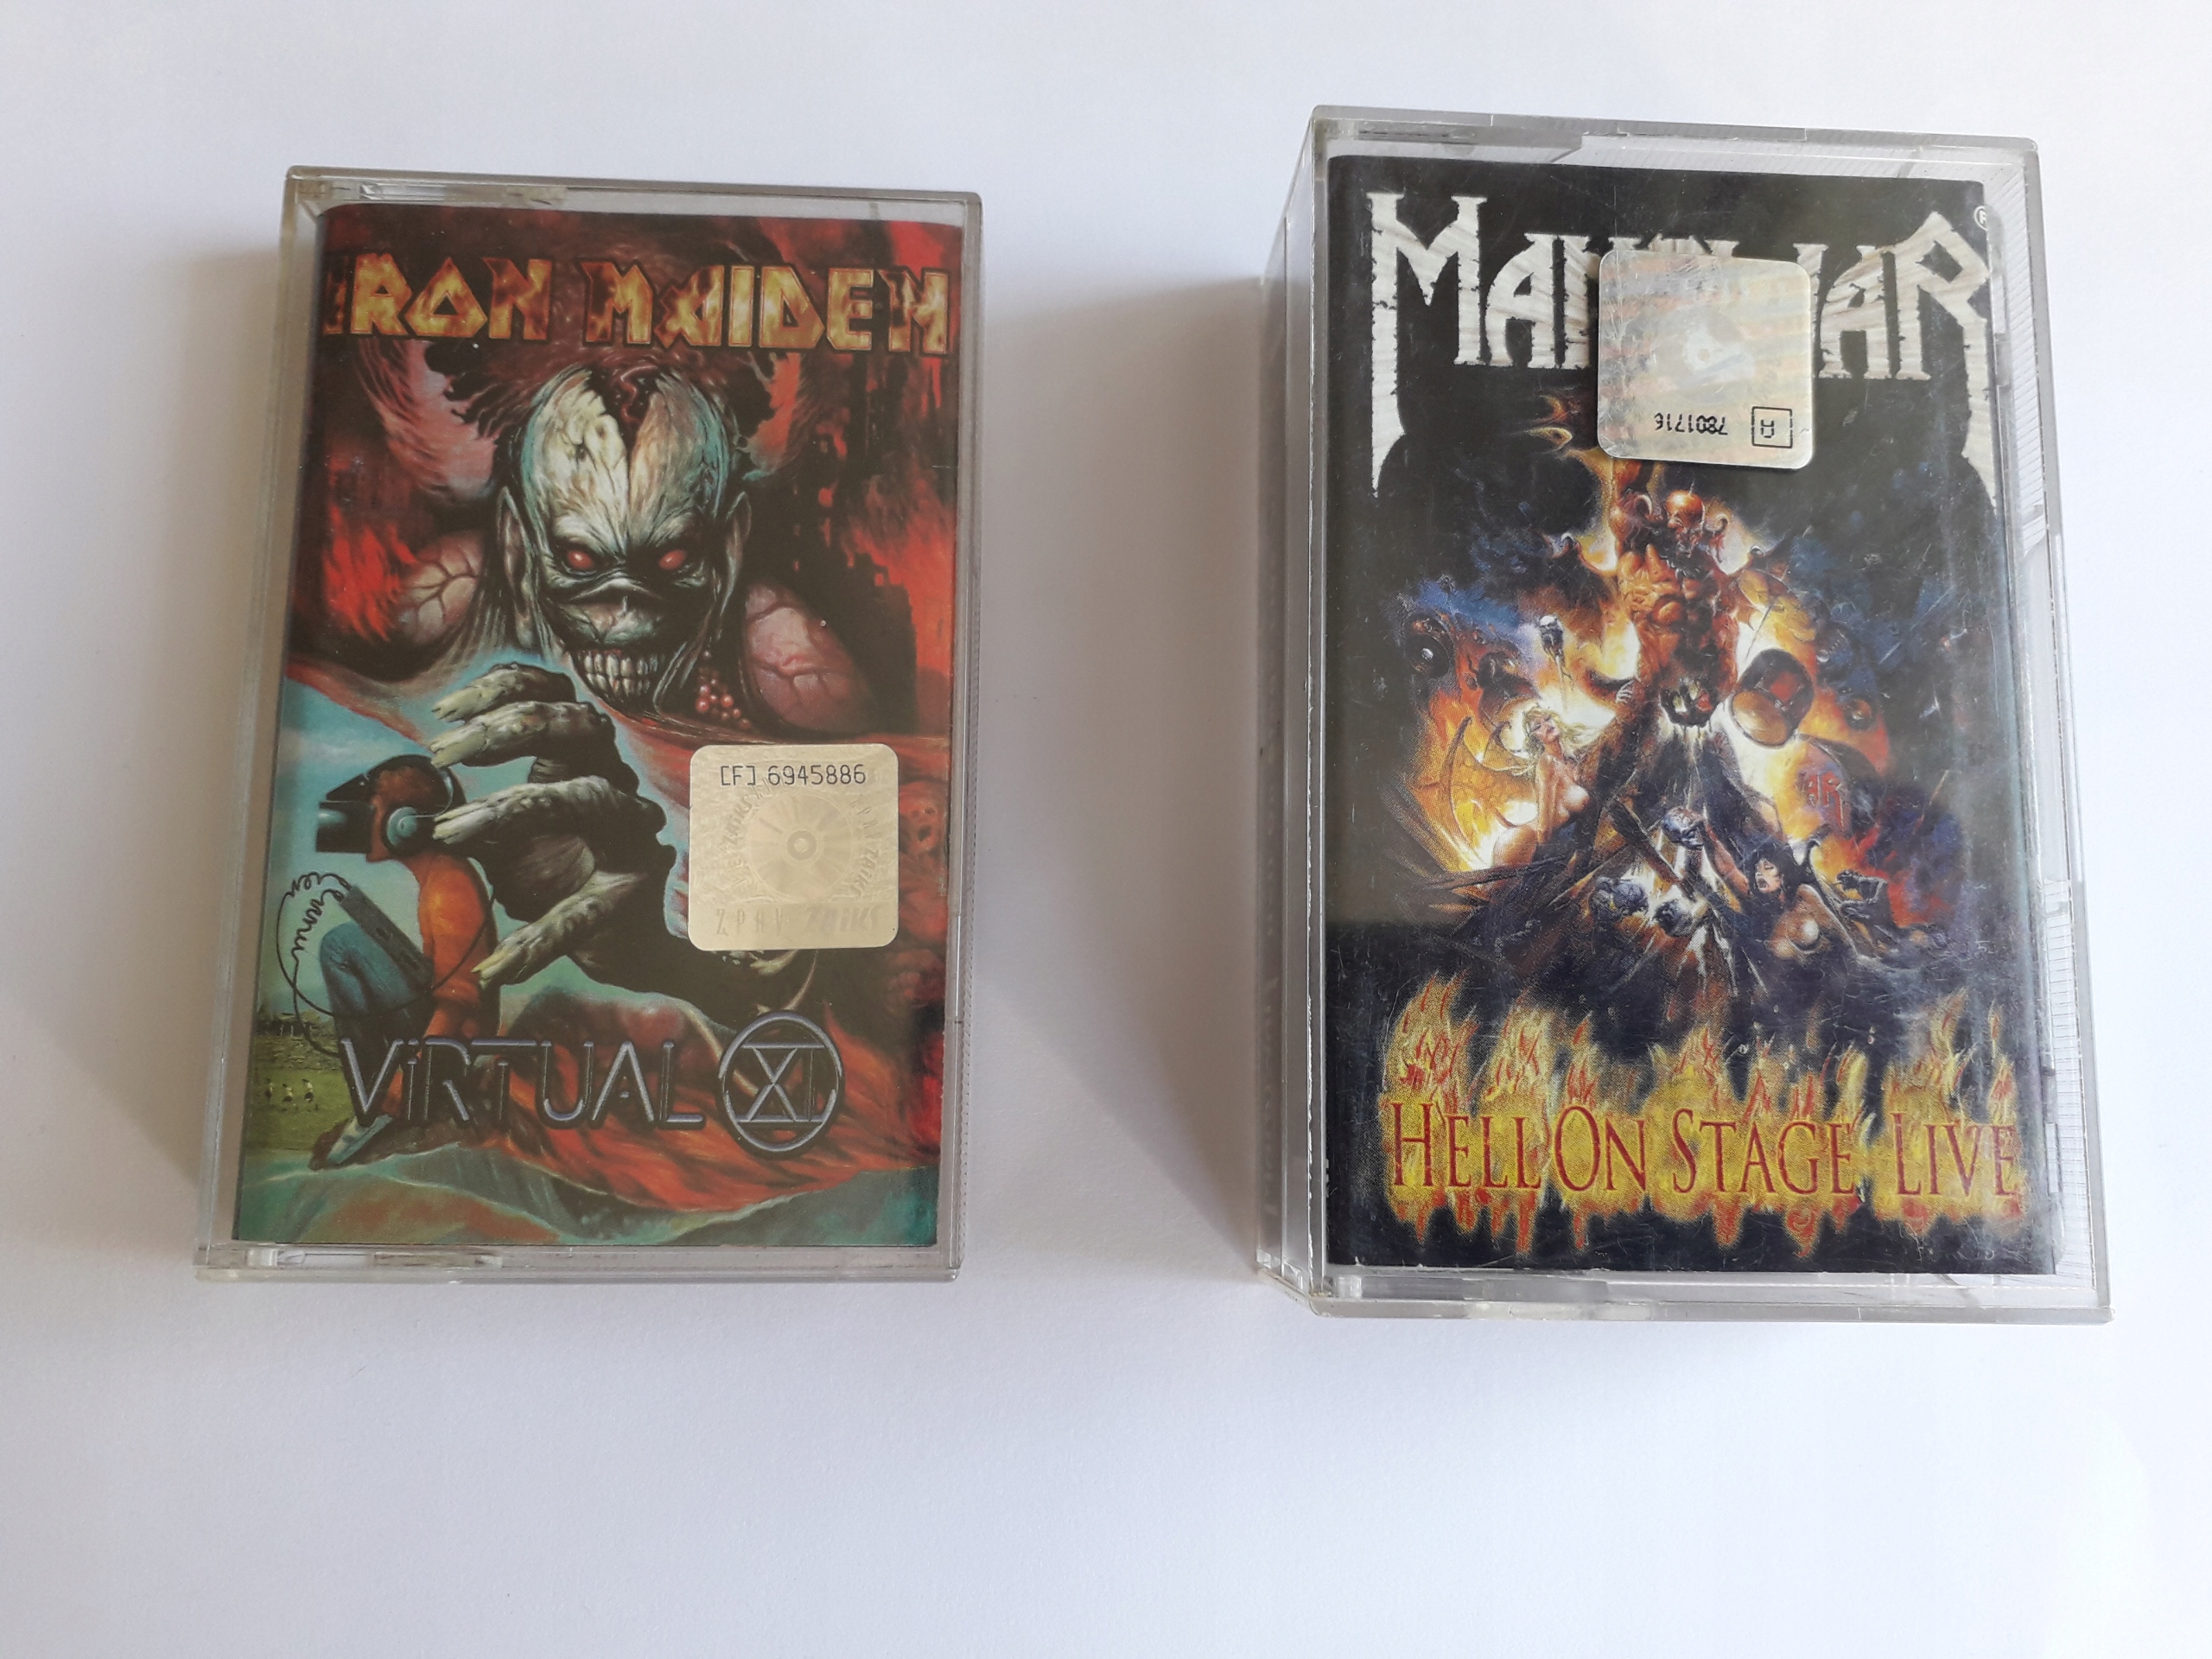 Kasety - zestaw: Iron Maiden Virtual XI i Hell on stage Manowar - 2 kasety!